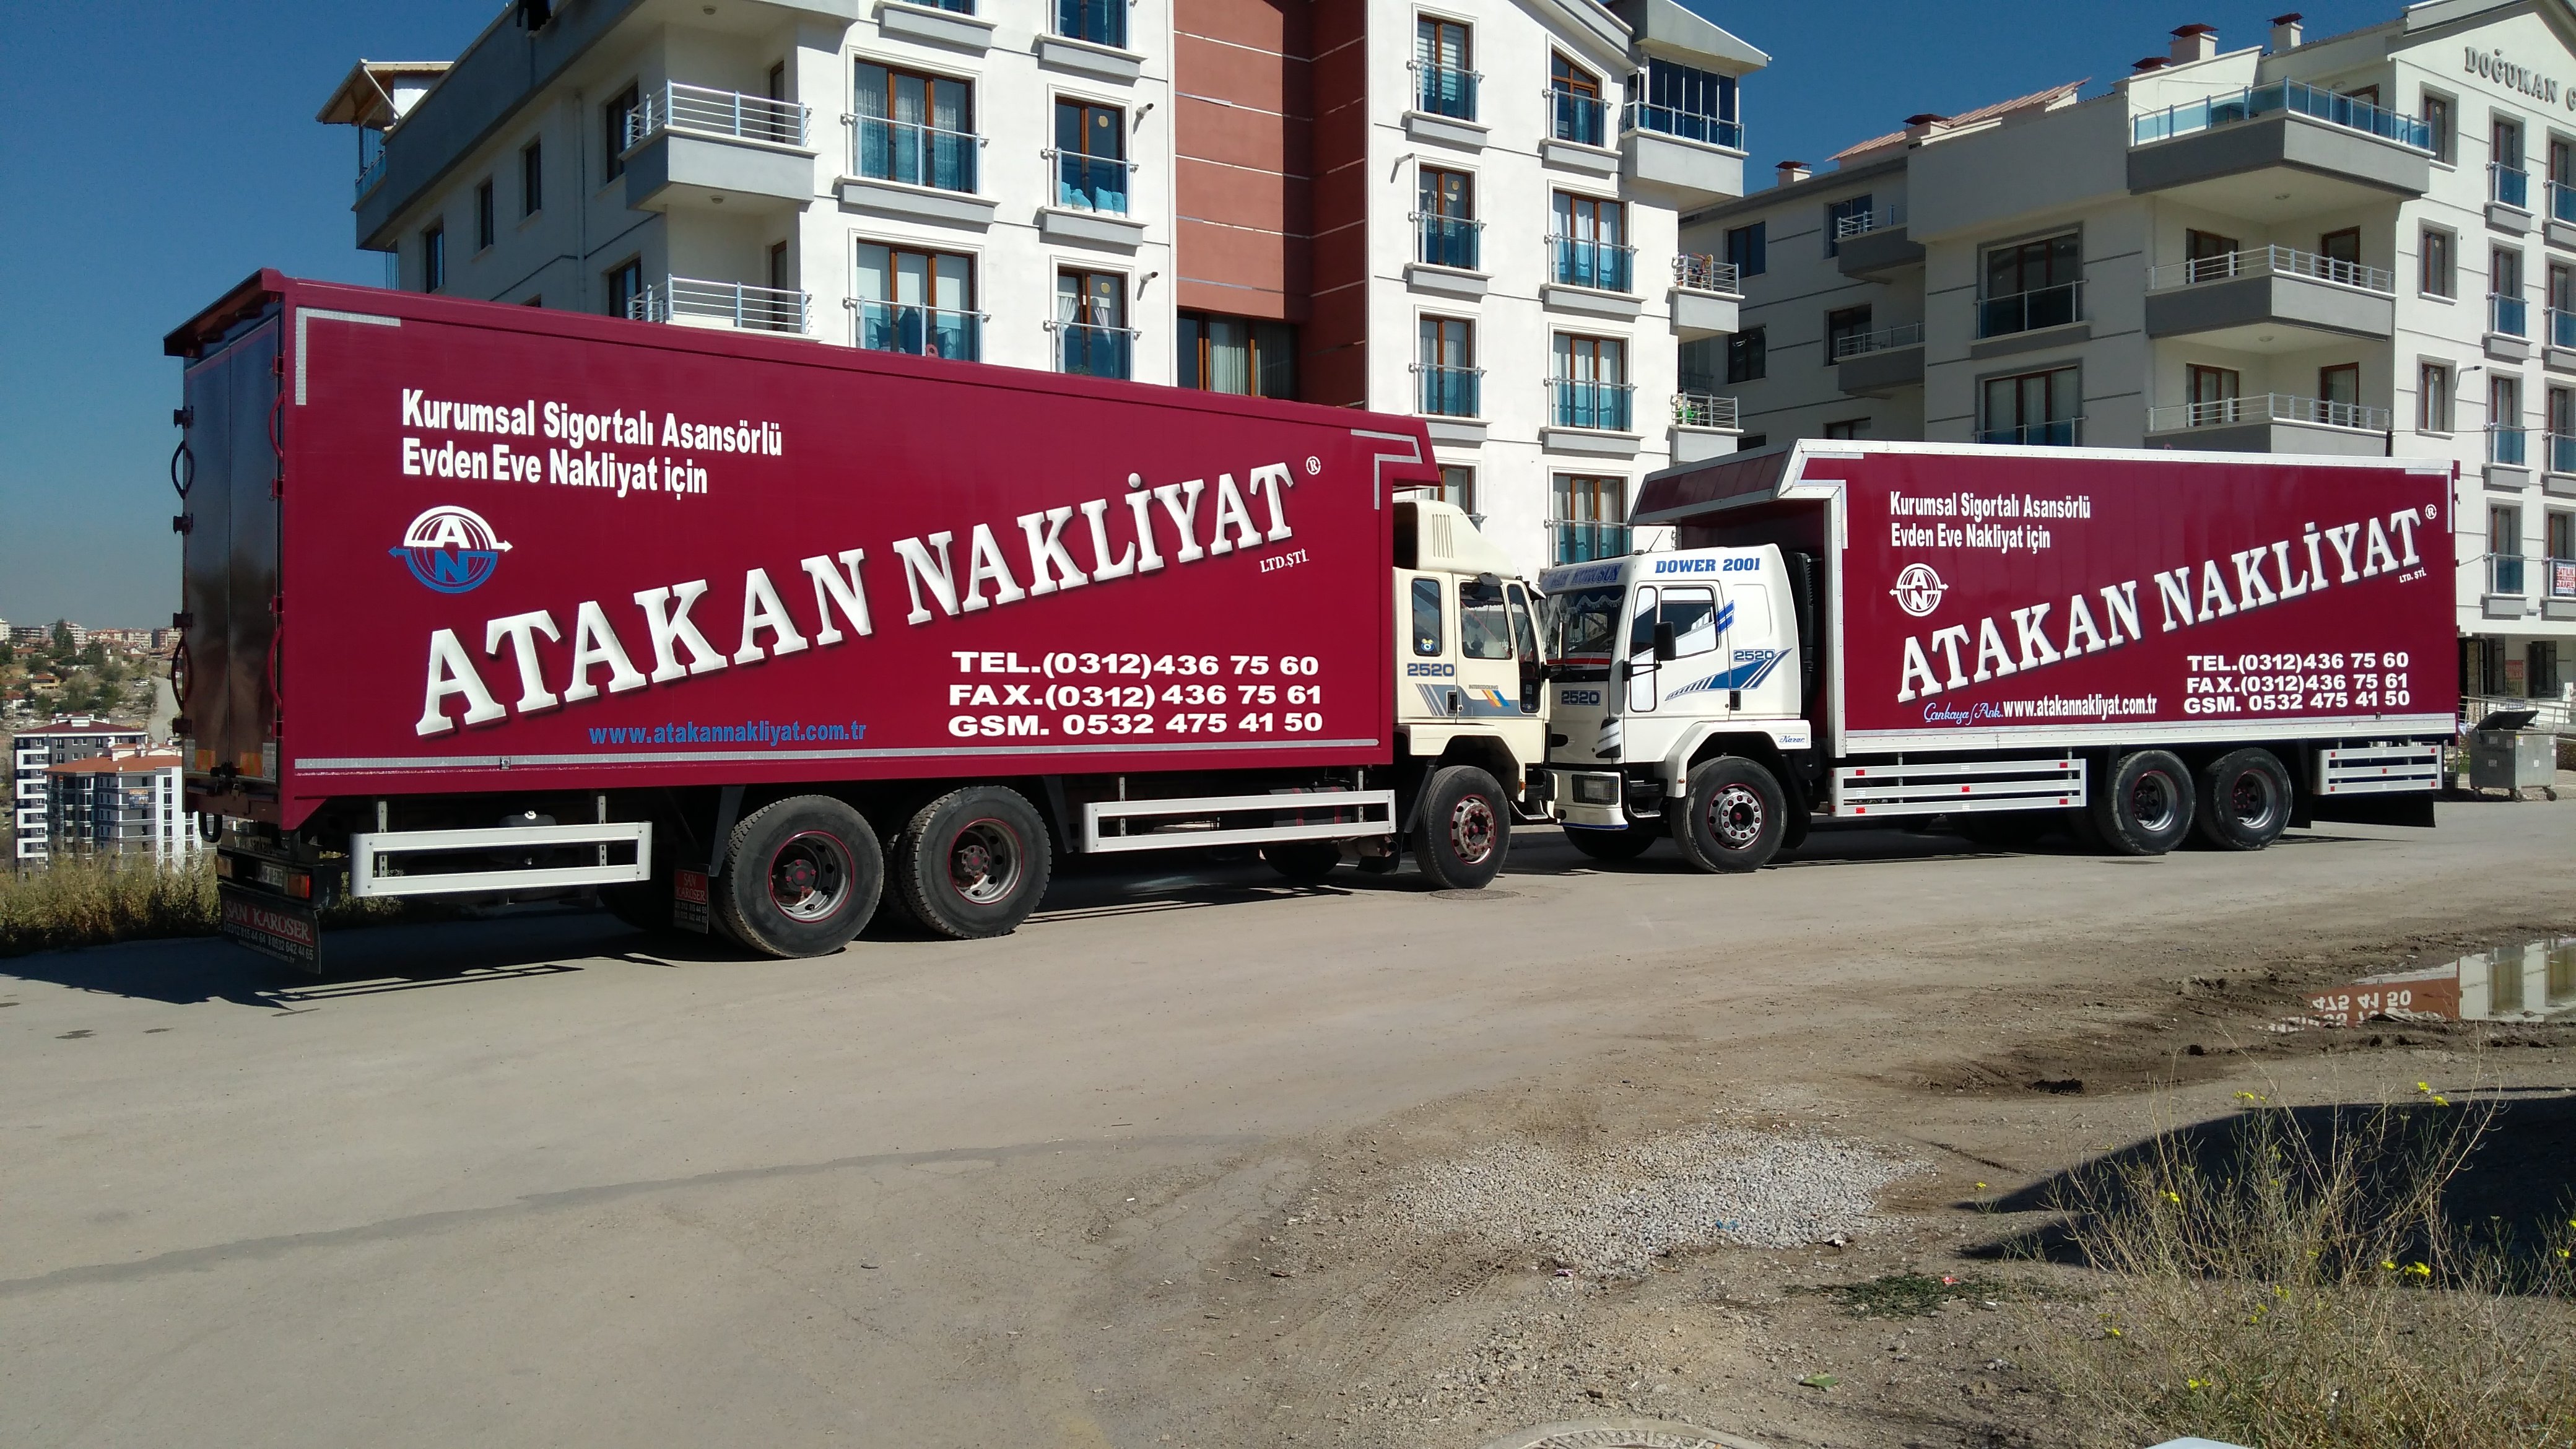 Asansörlü Nakliyat Ankara, Asansörlü Taşımacılık Ankara